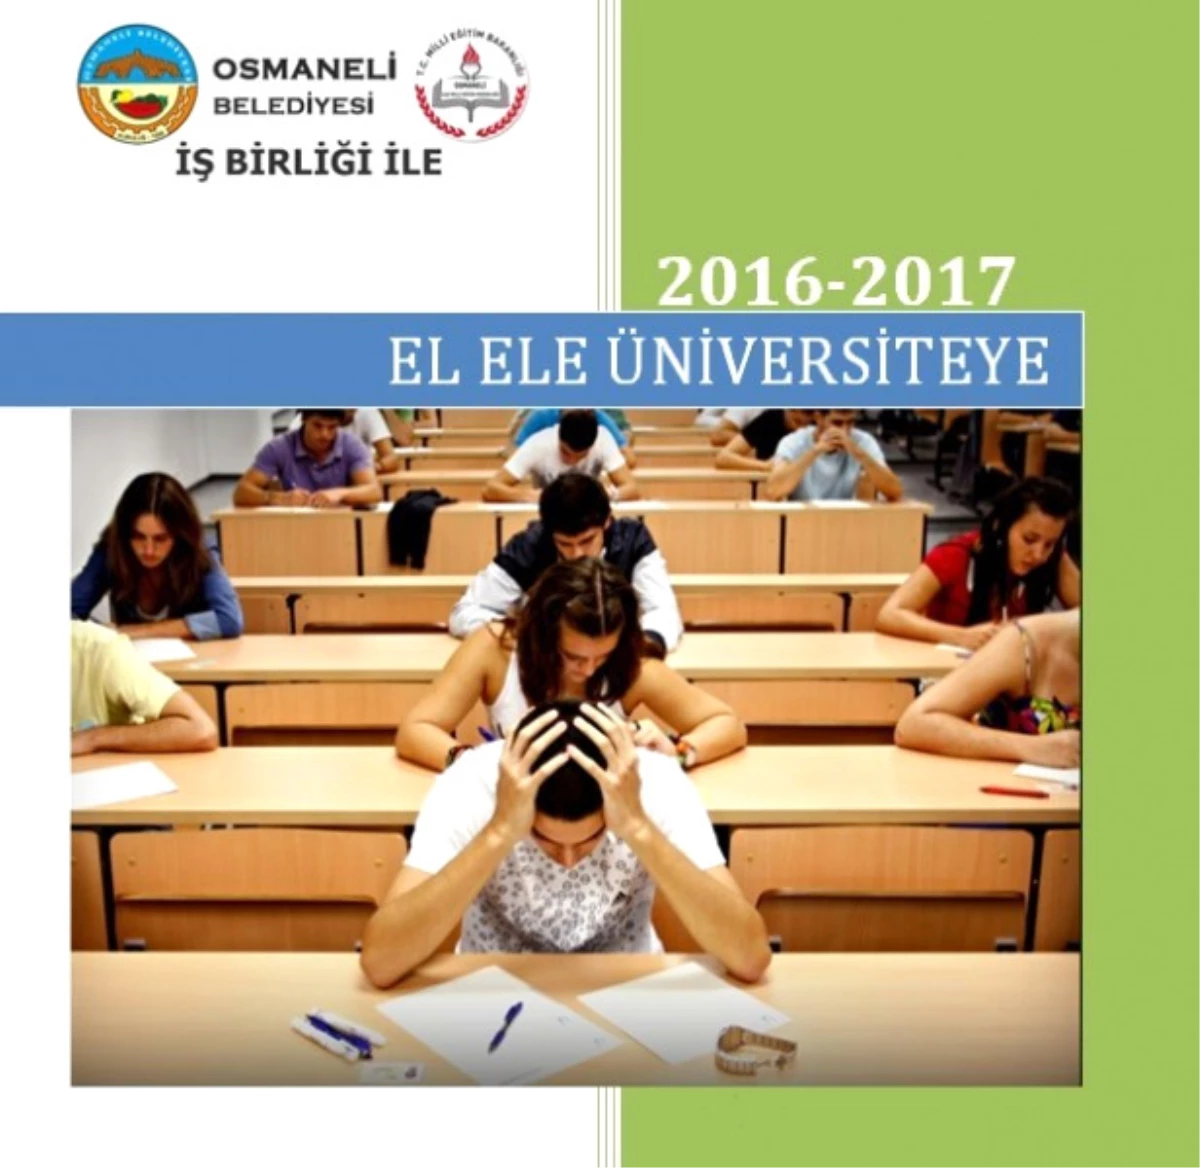 İlçe Milli Eğitim Müdürlüğü ve Osmaneli Belediyesi İş Birliği ile \'El Ele Üniversiteye\' Projesi